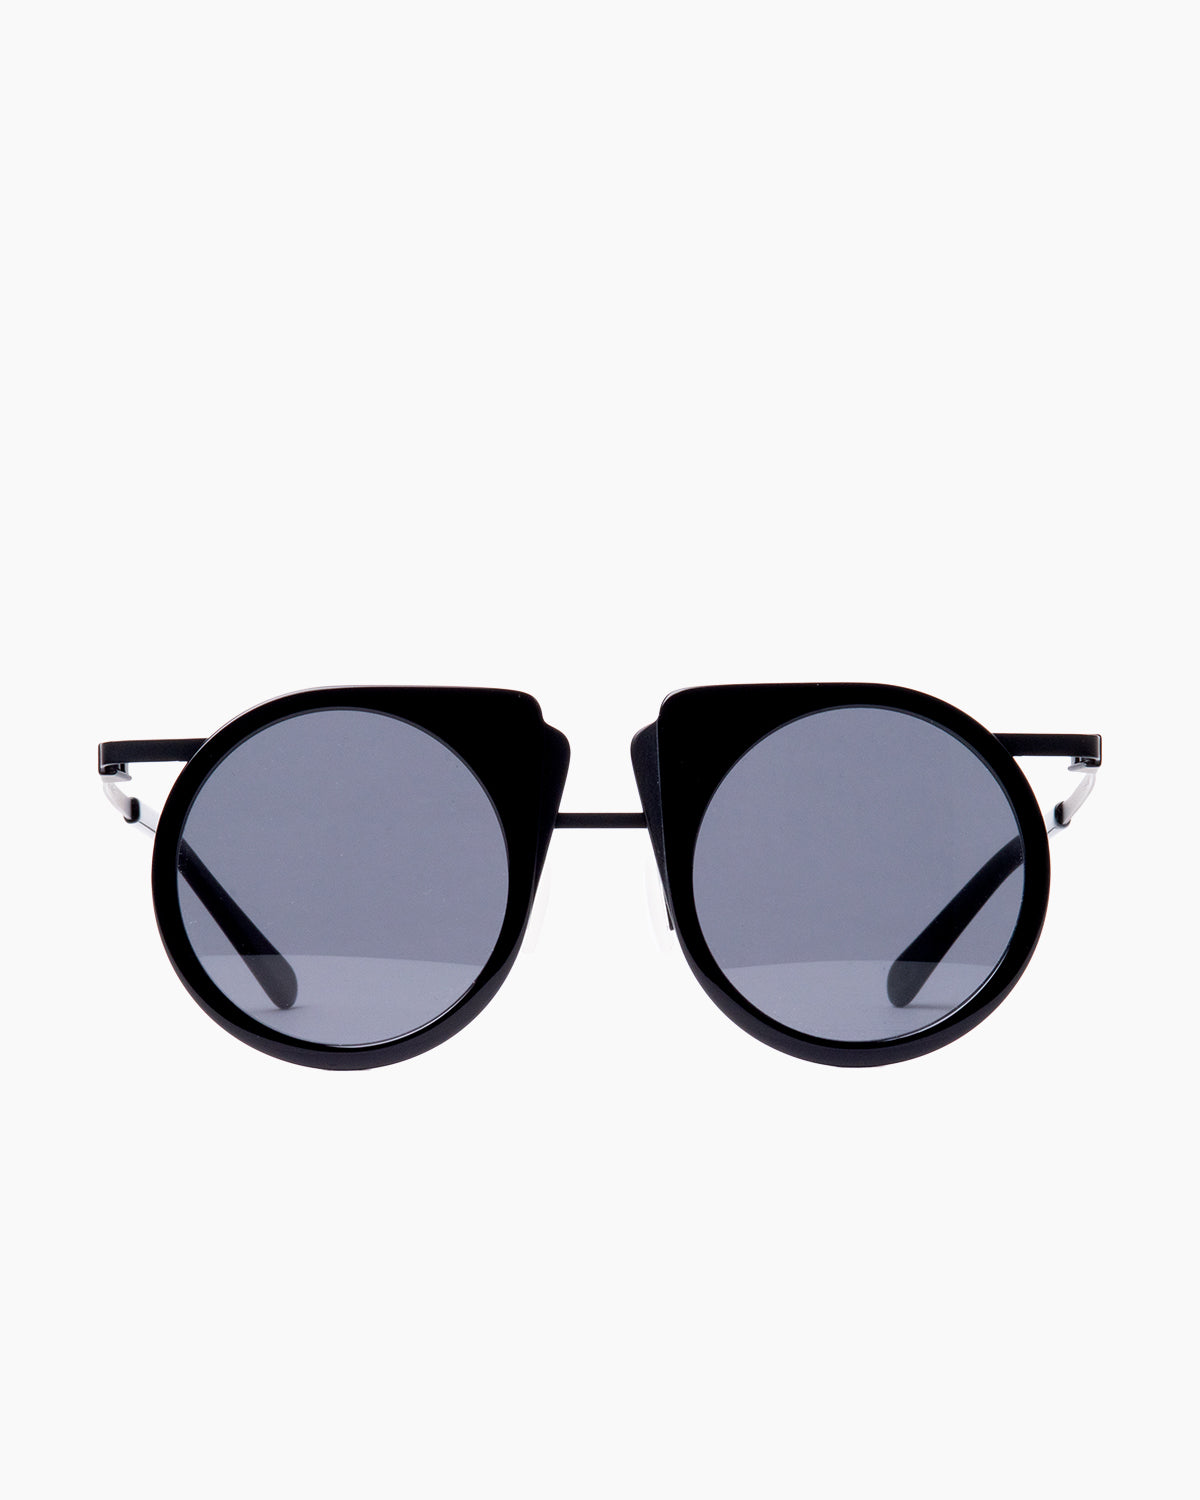 Gamine - FlipS - Black/Black | Bar à lunettes